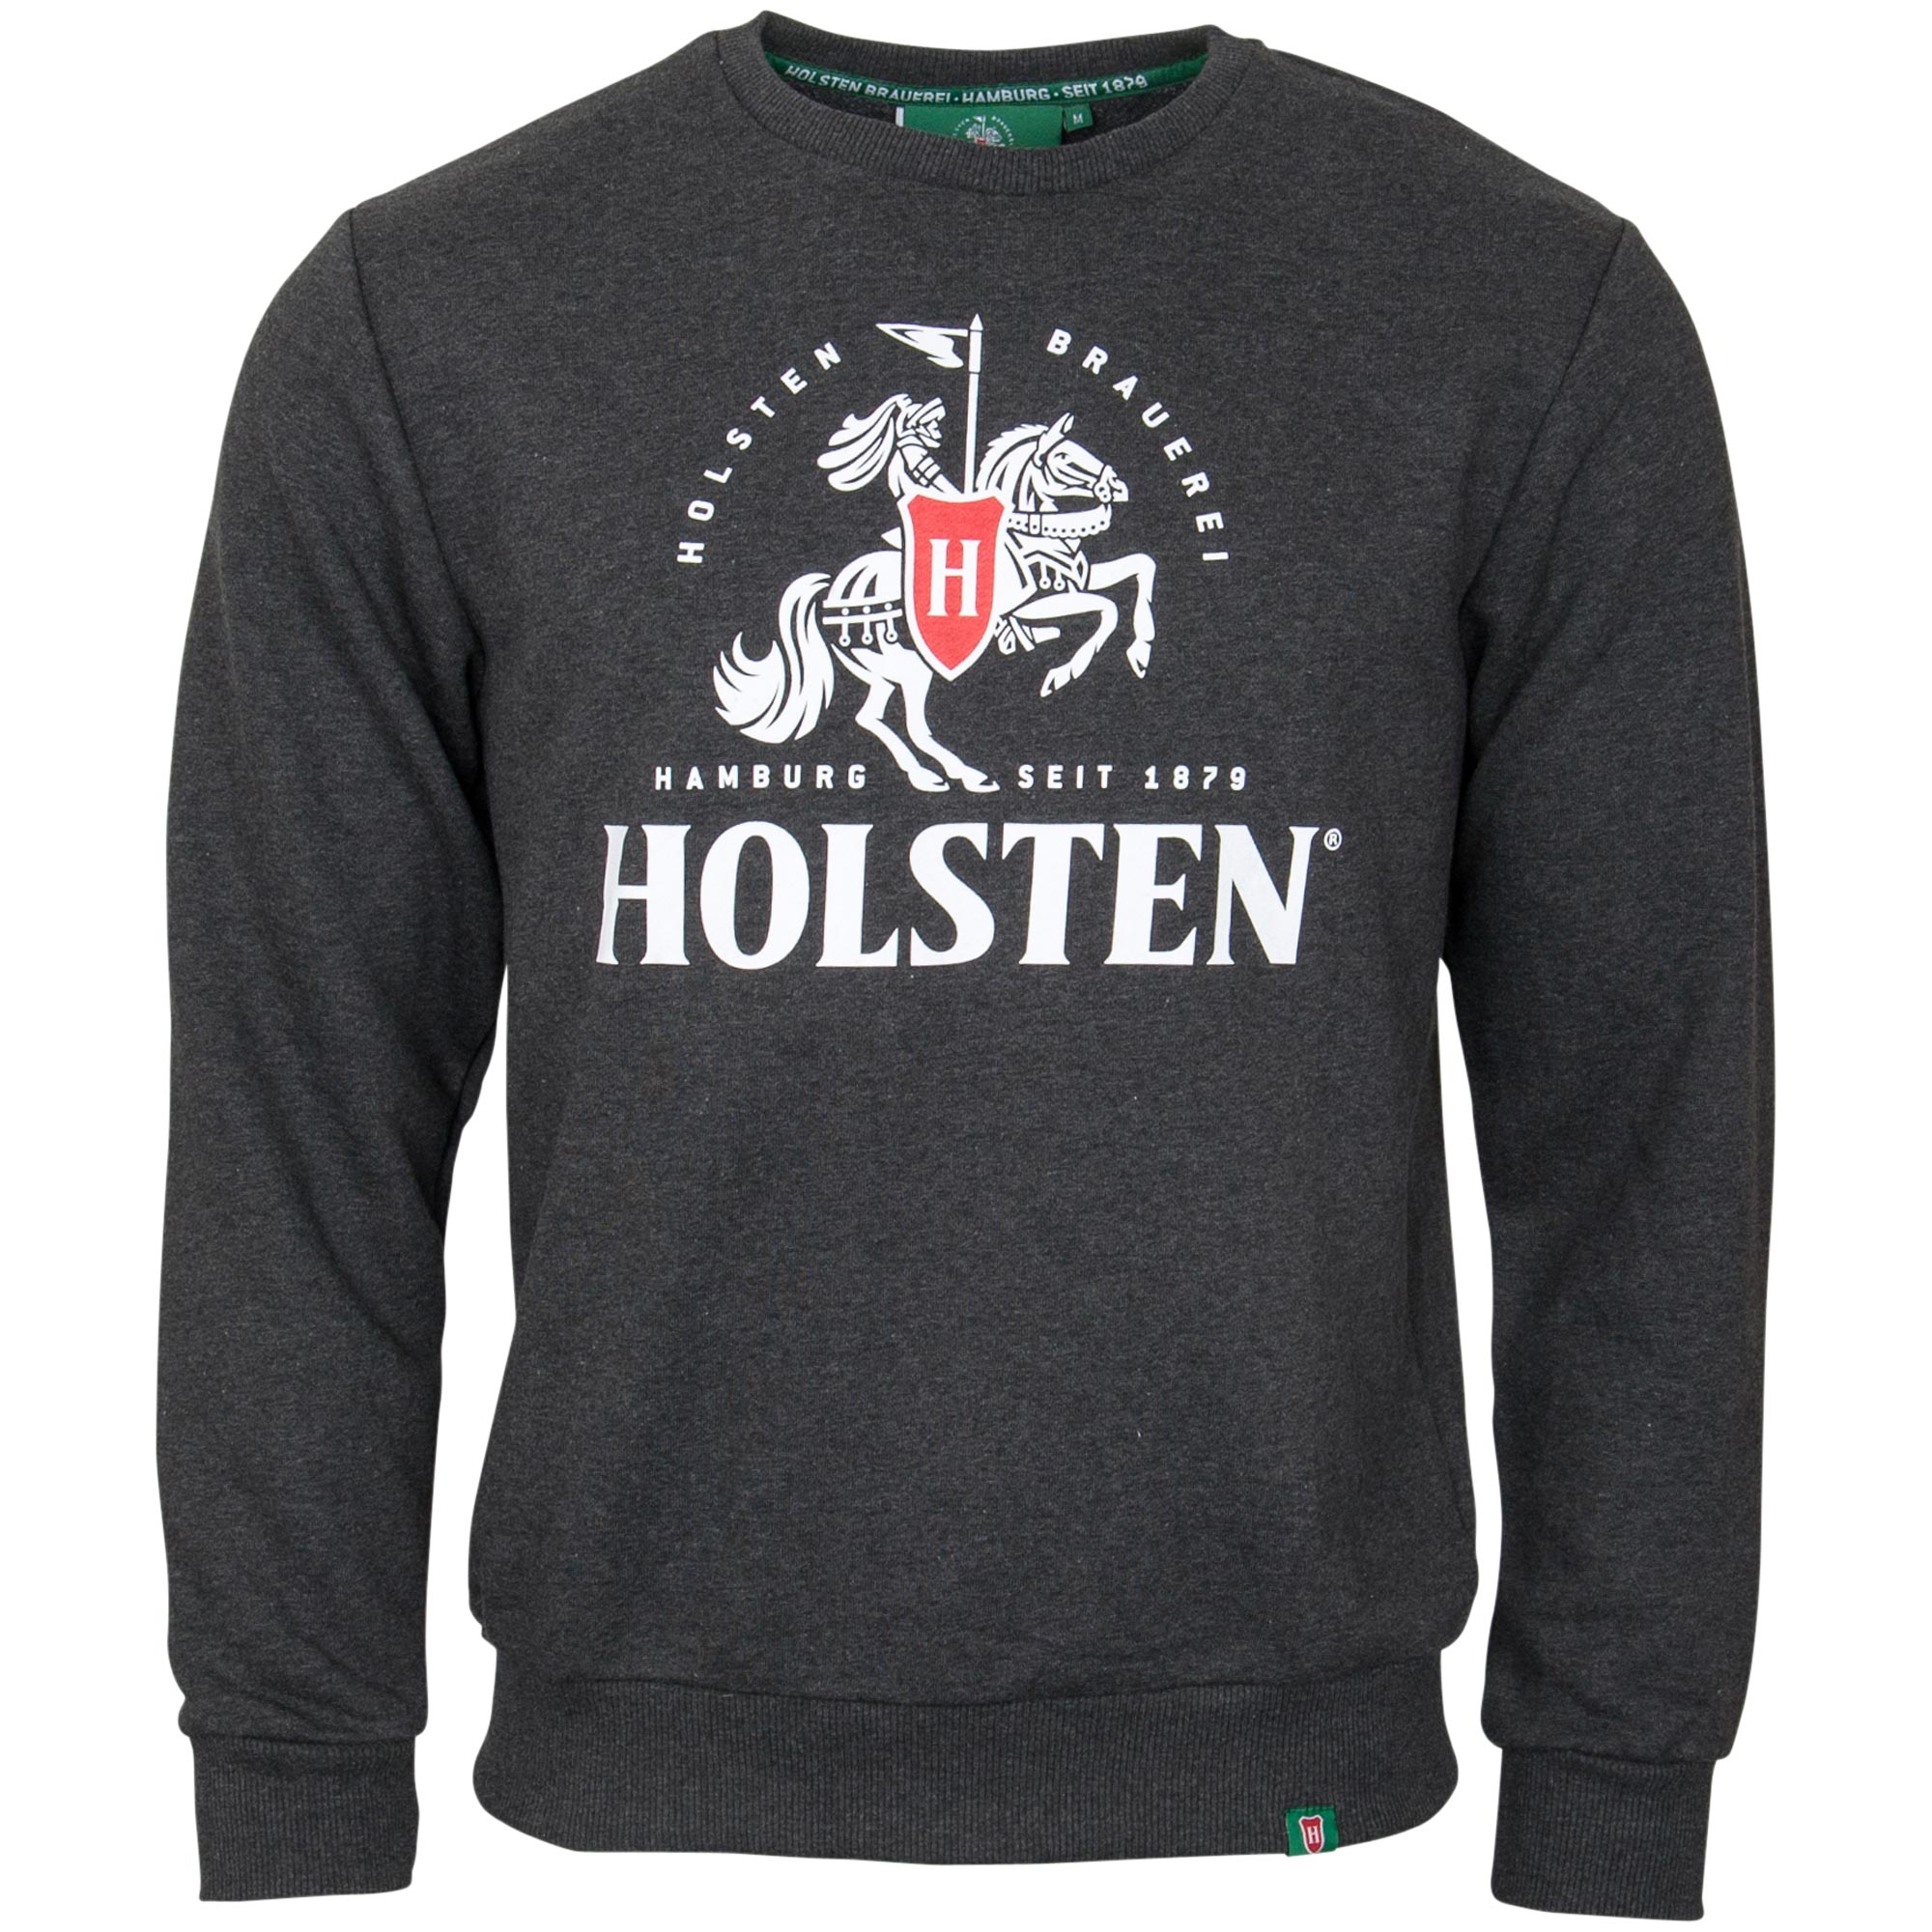 Holsten - Sweatshirt Ritter - anthracite